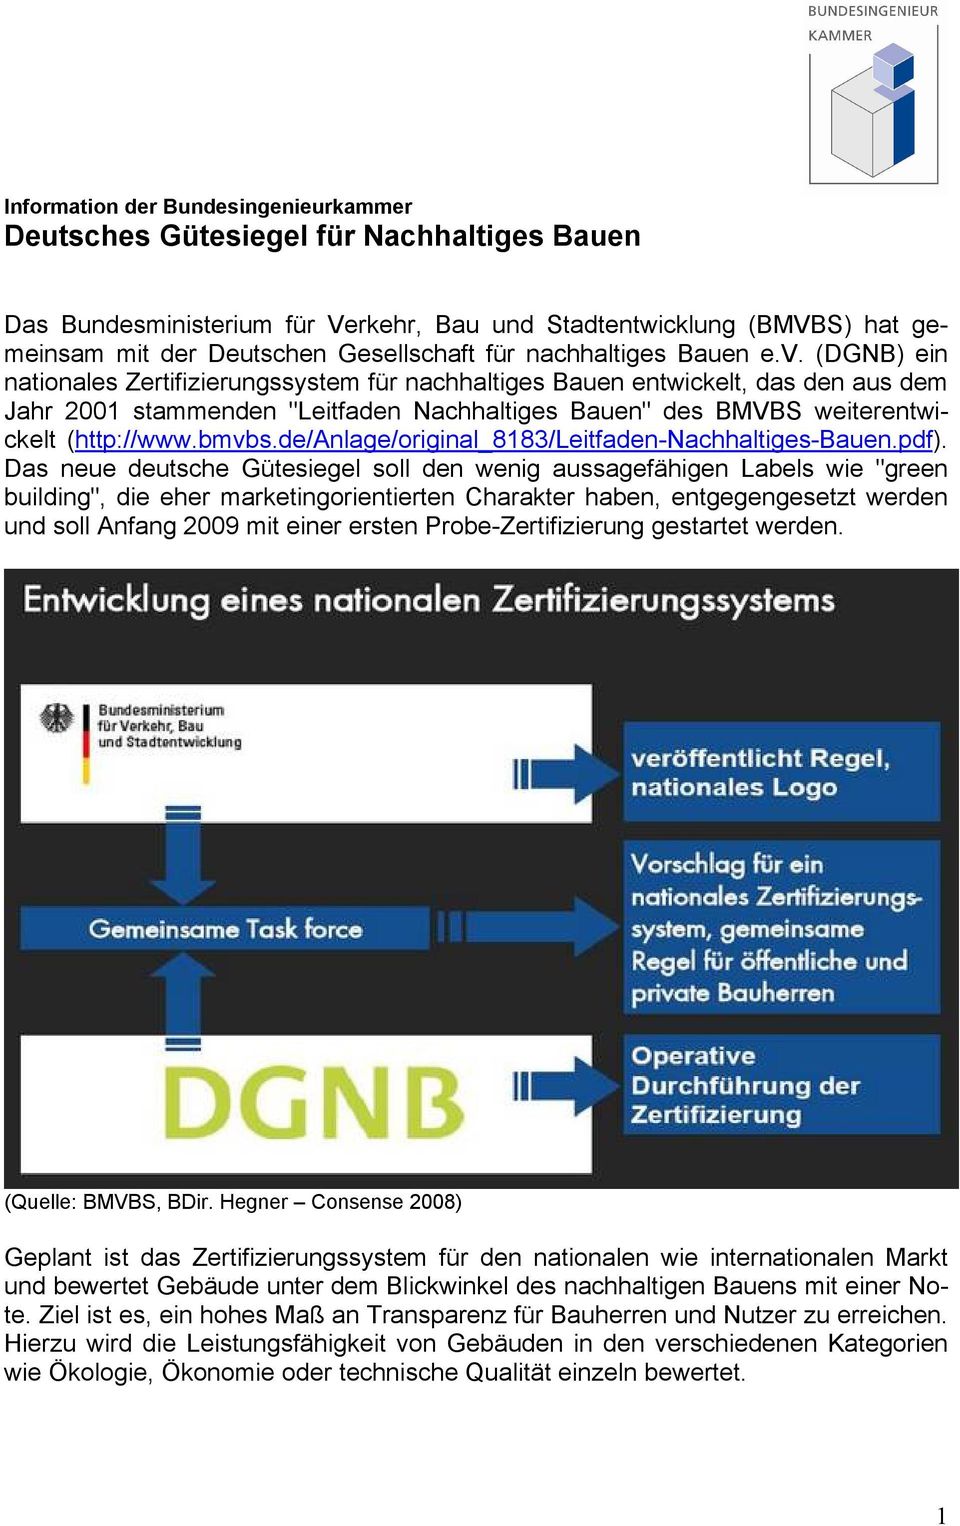 (DGNB) ein nationales Zertifizierungssystem für nachhaltiges Bauen entwickelt, das den aus dem Jahr 2001 stammenden "Leitfaden Nachhaltiges Bauen" des BMVBS weiterentwickelt (http://www.bmvbs.